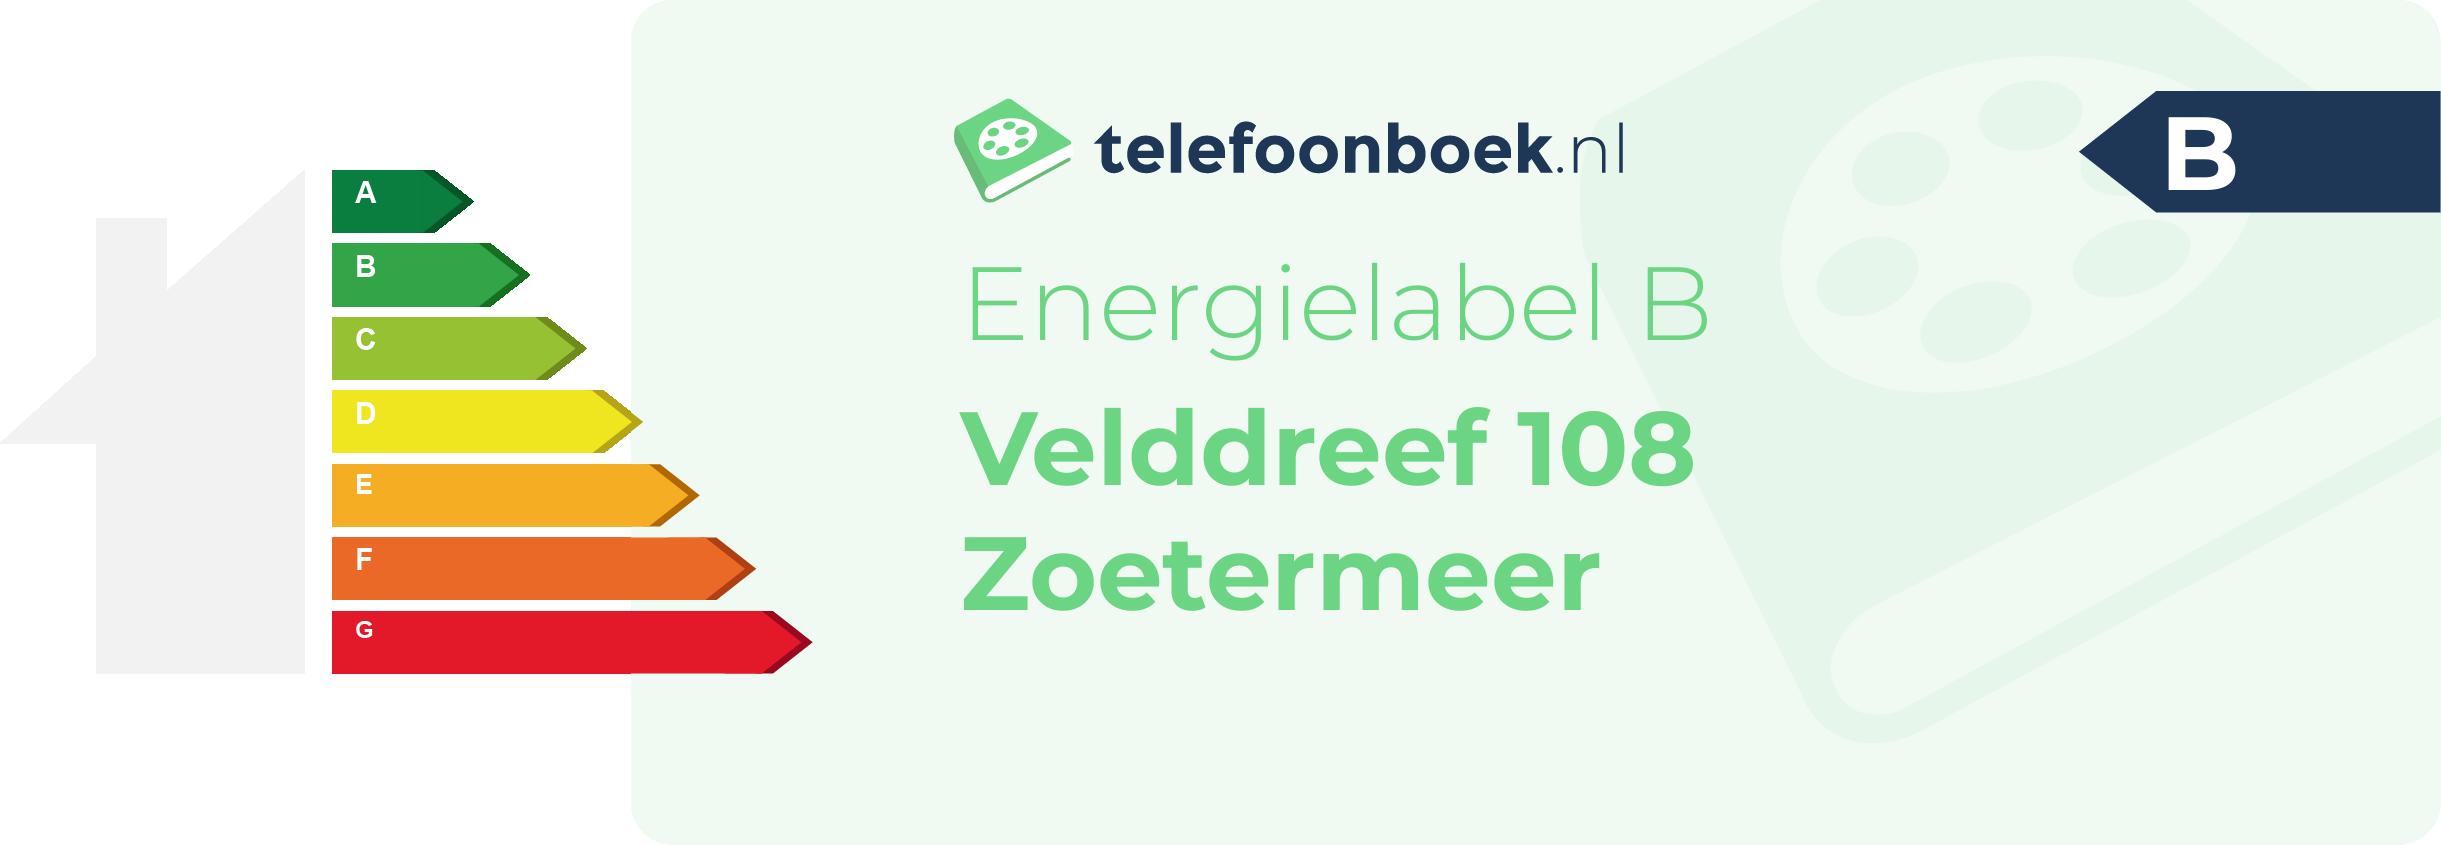 Energielabel Velddreef 108 Zoetermeer